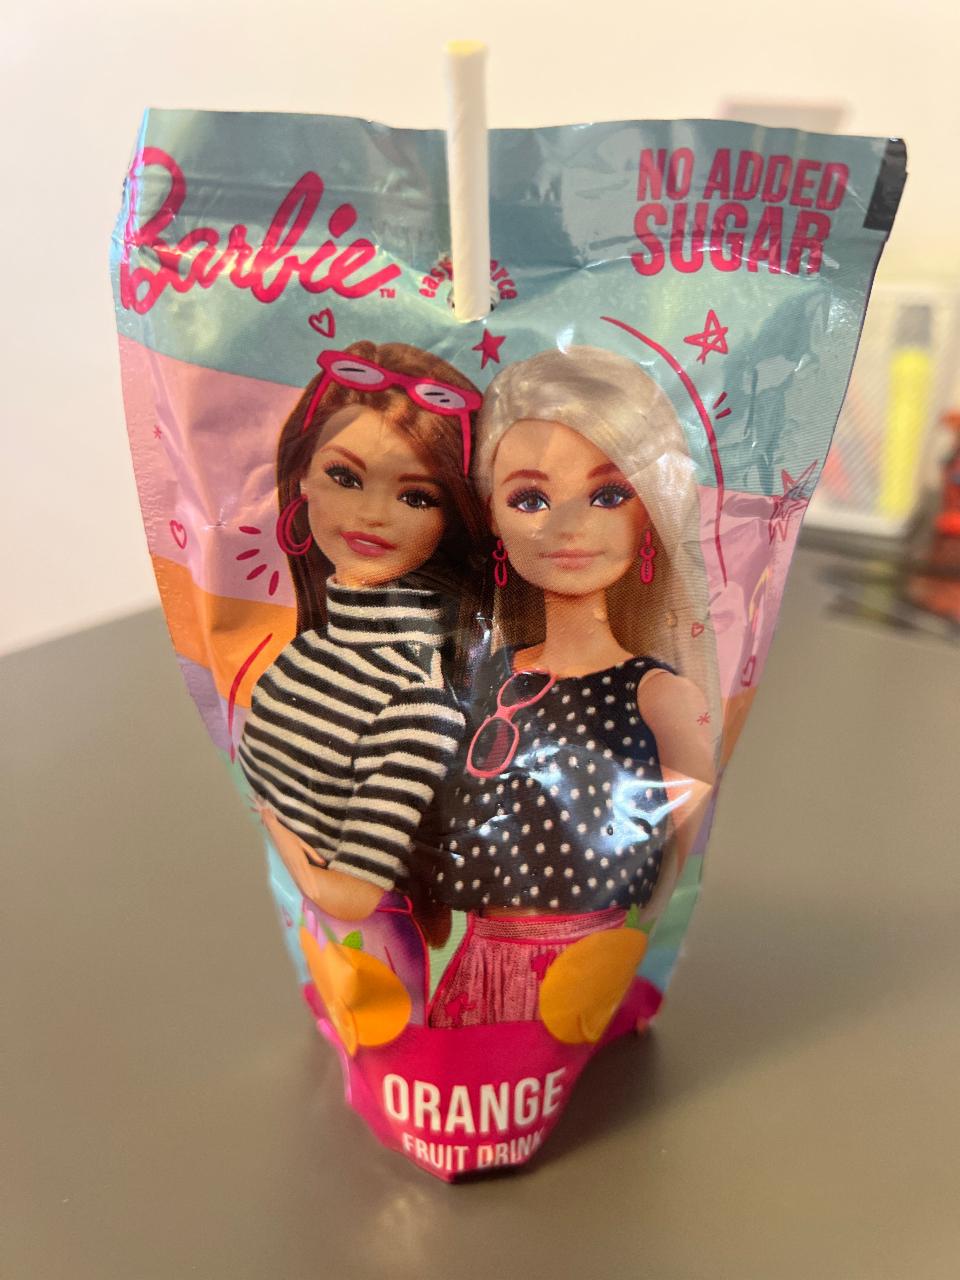 Fotografie - Orange fruit drink no added sugar Barbie